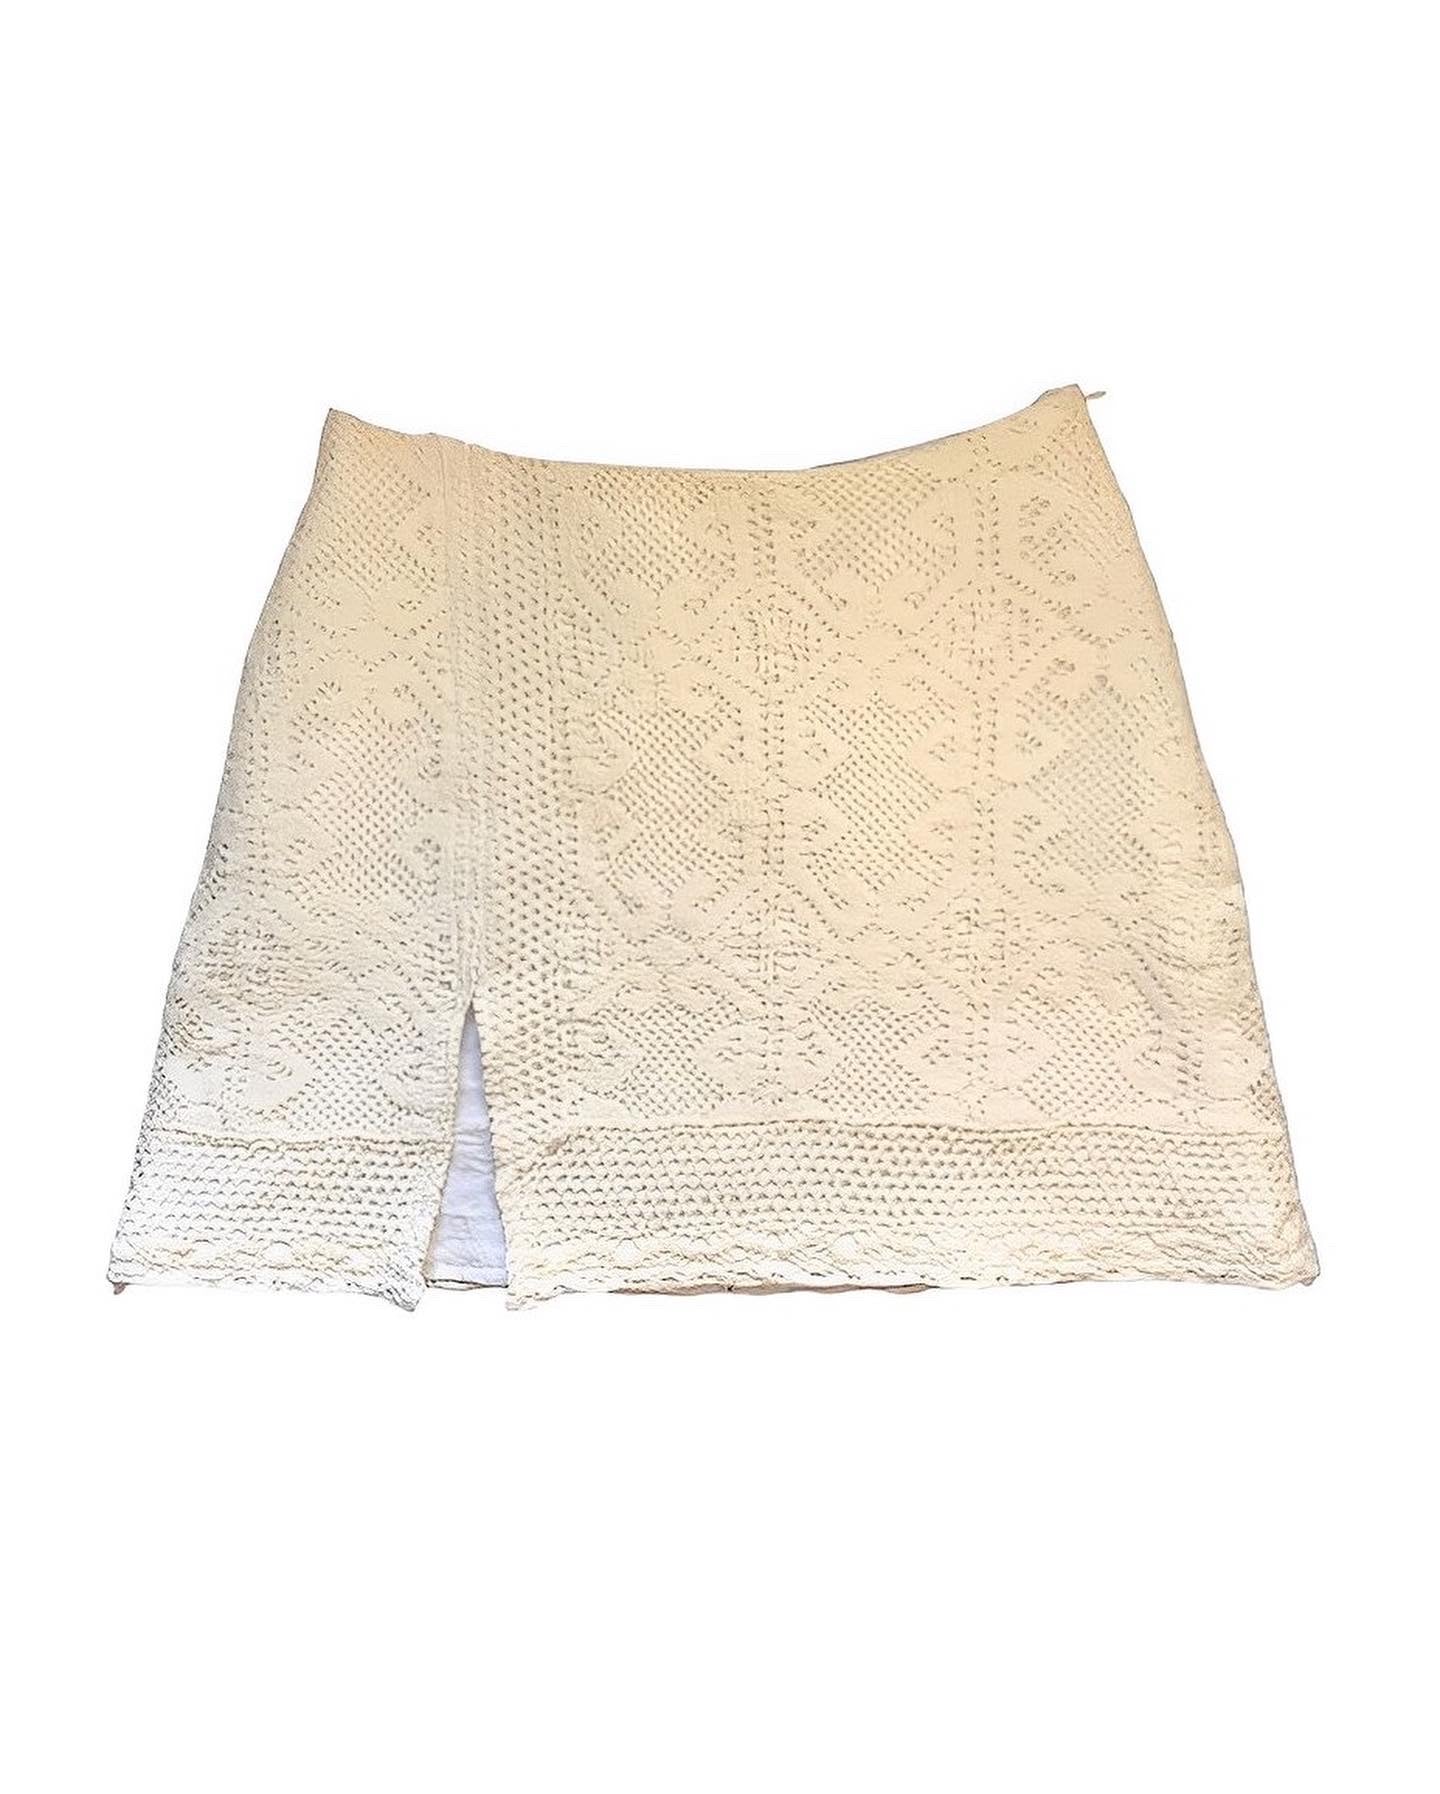 【REMAKE 】Crochet Skirt